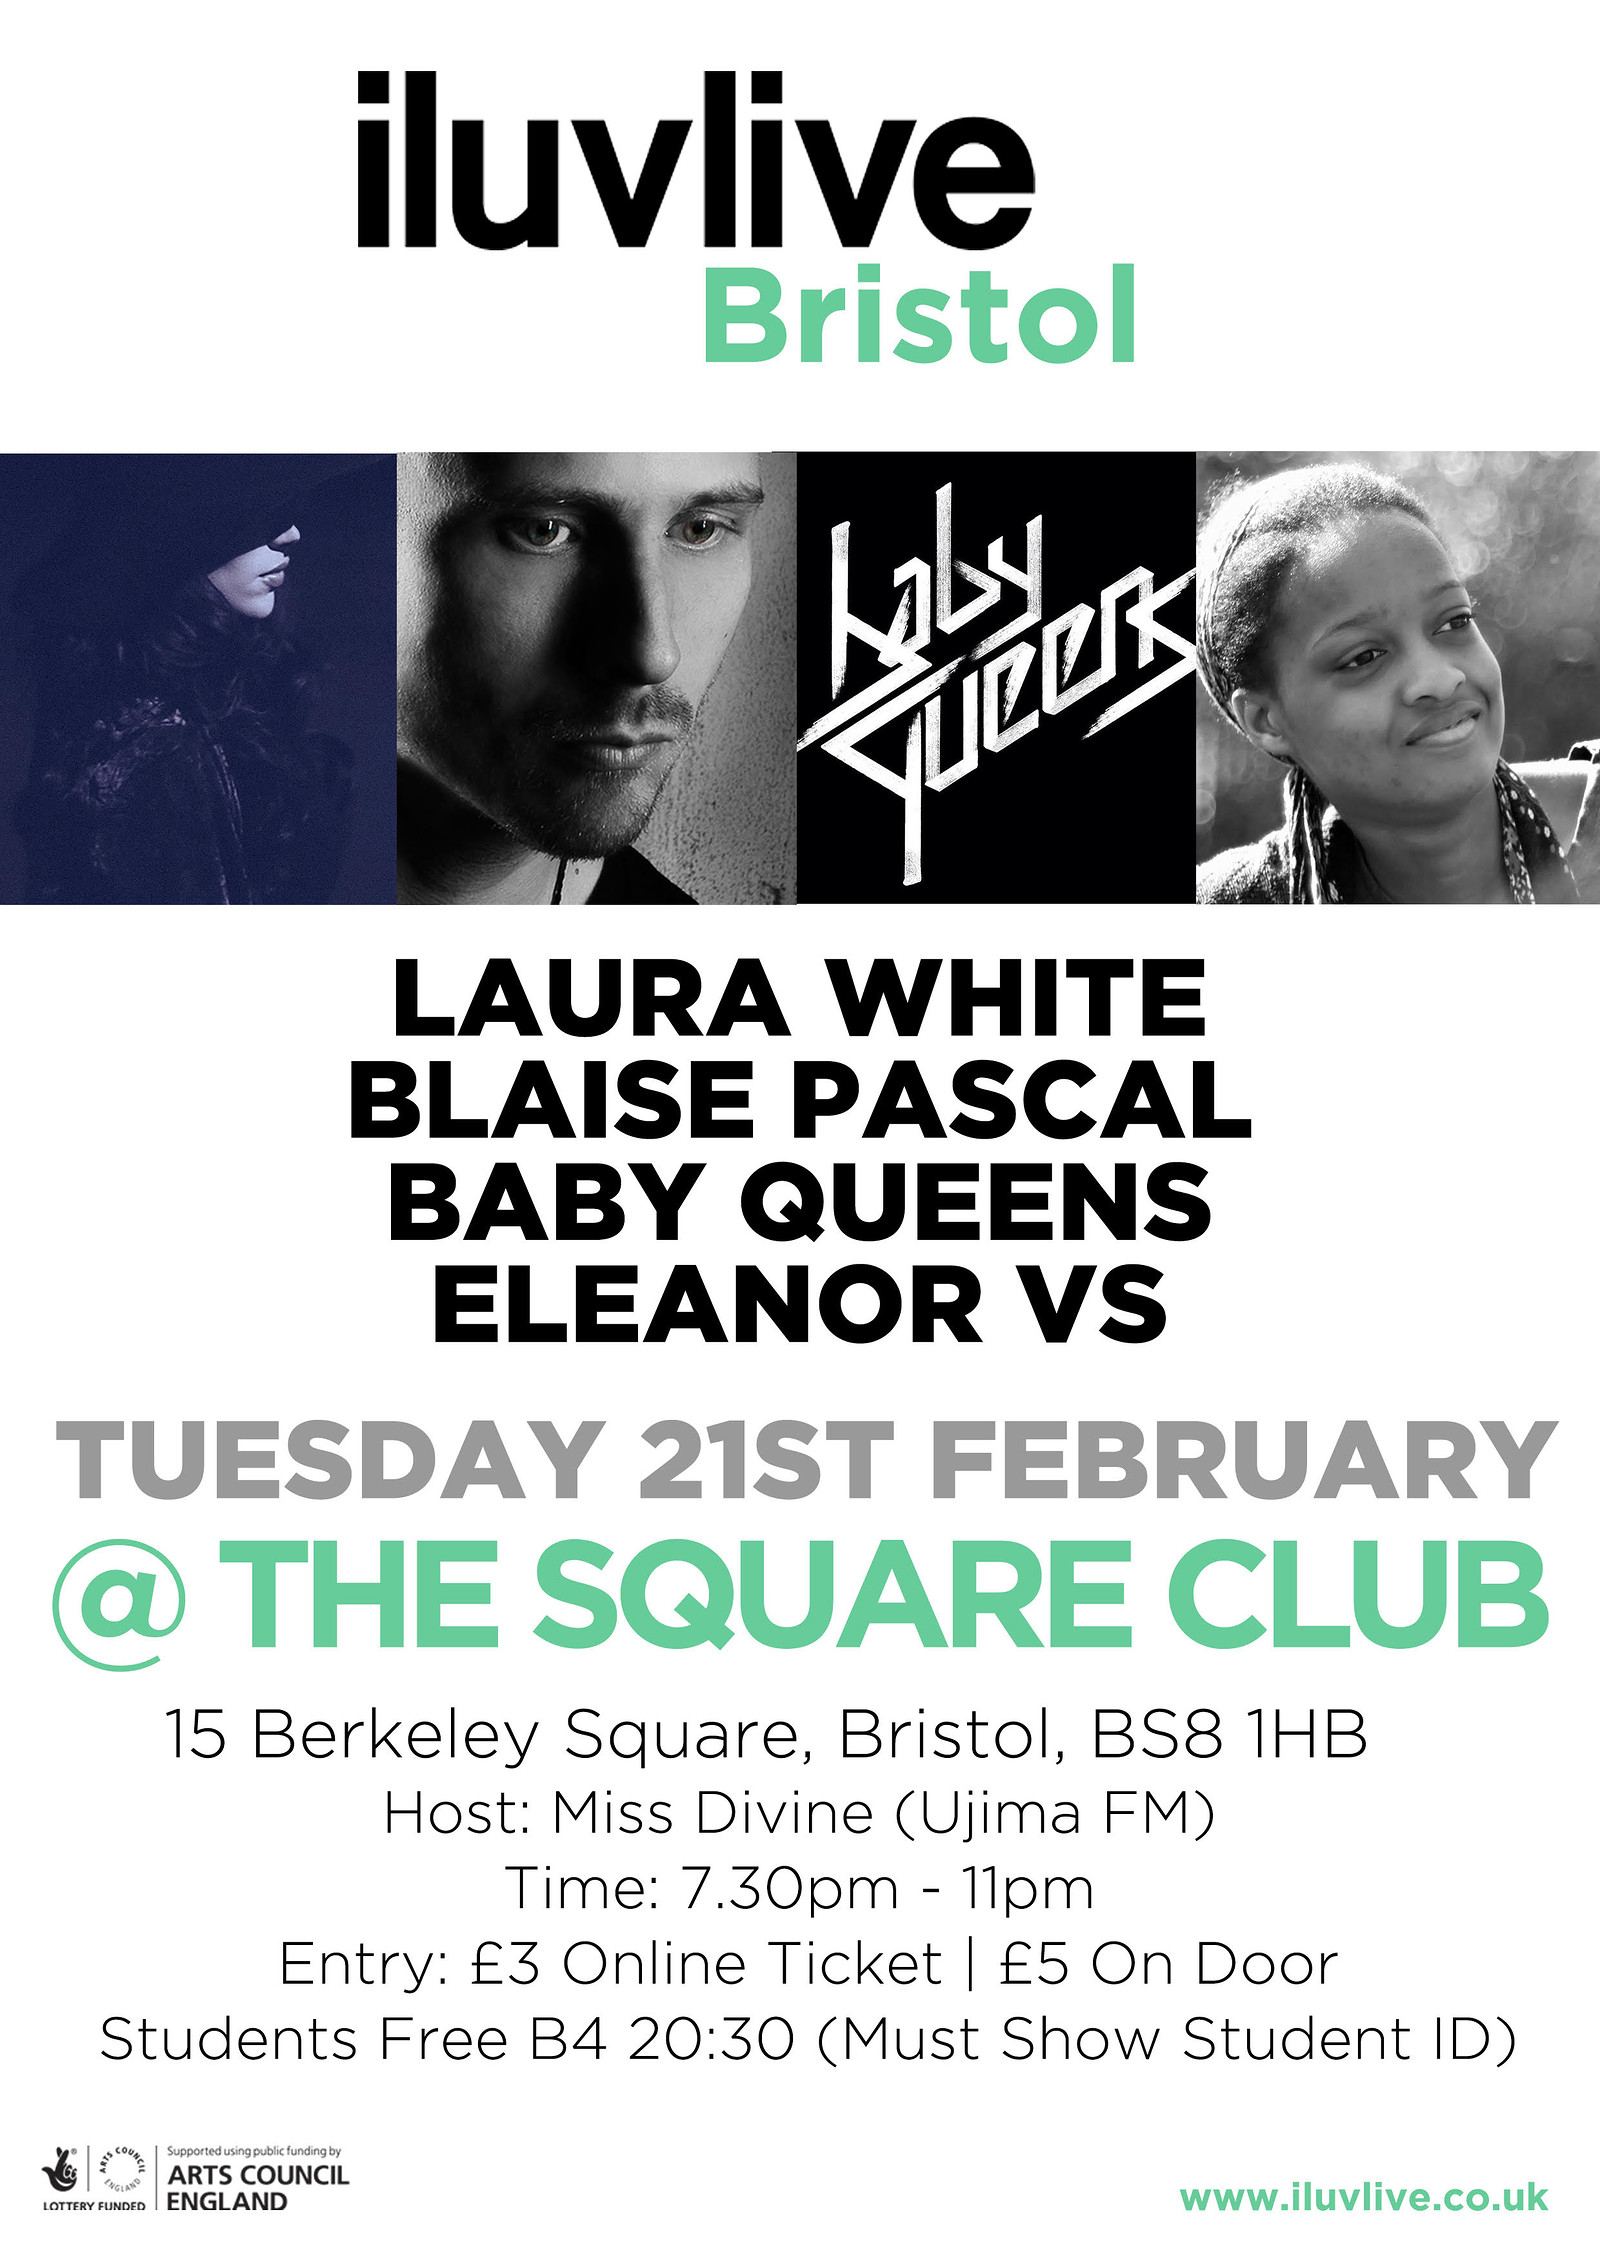 iluvBristol - Laura White Headline Tour at The Square Club